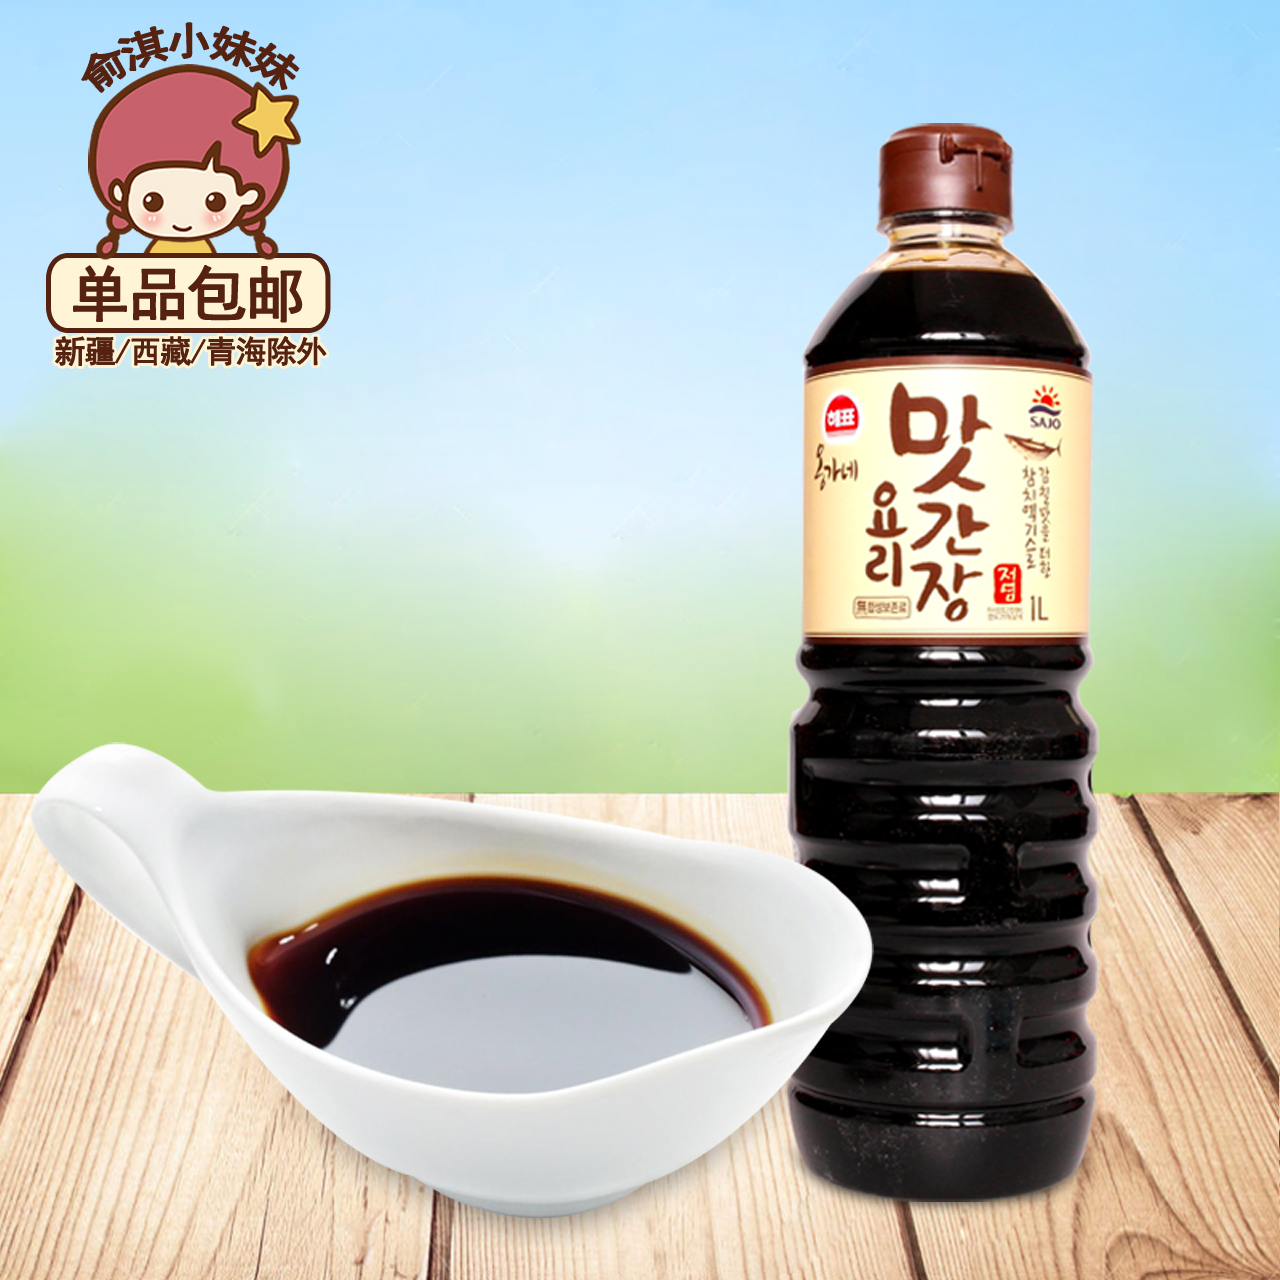 包邮海牌料理酱油1L韩国原装进口酱油寿司生鱼片酱油调味品